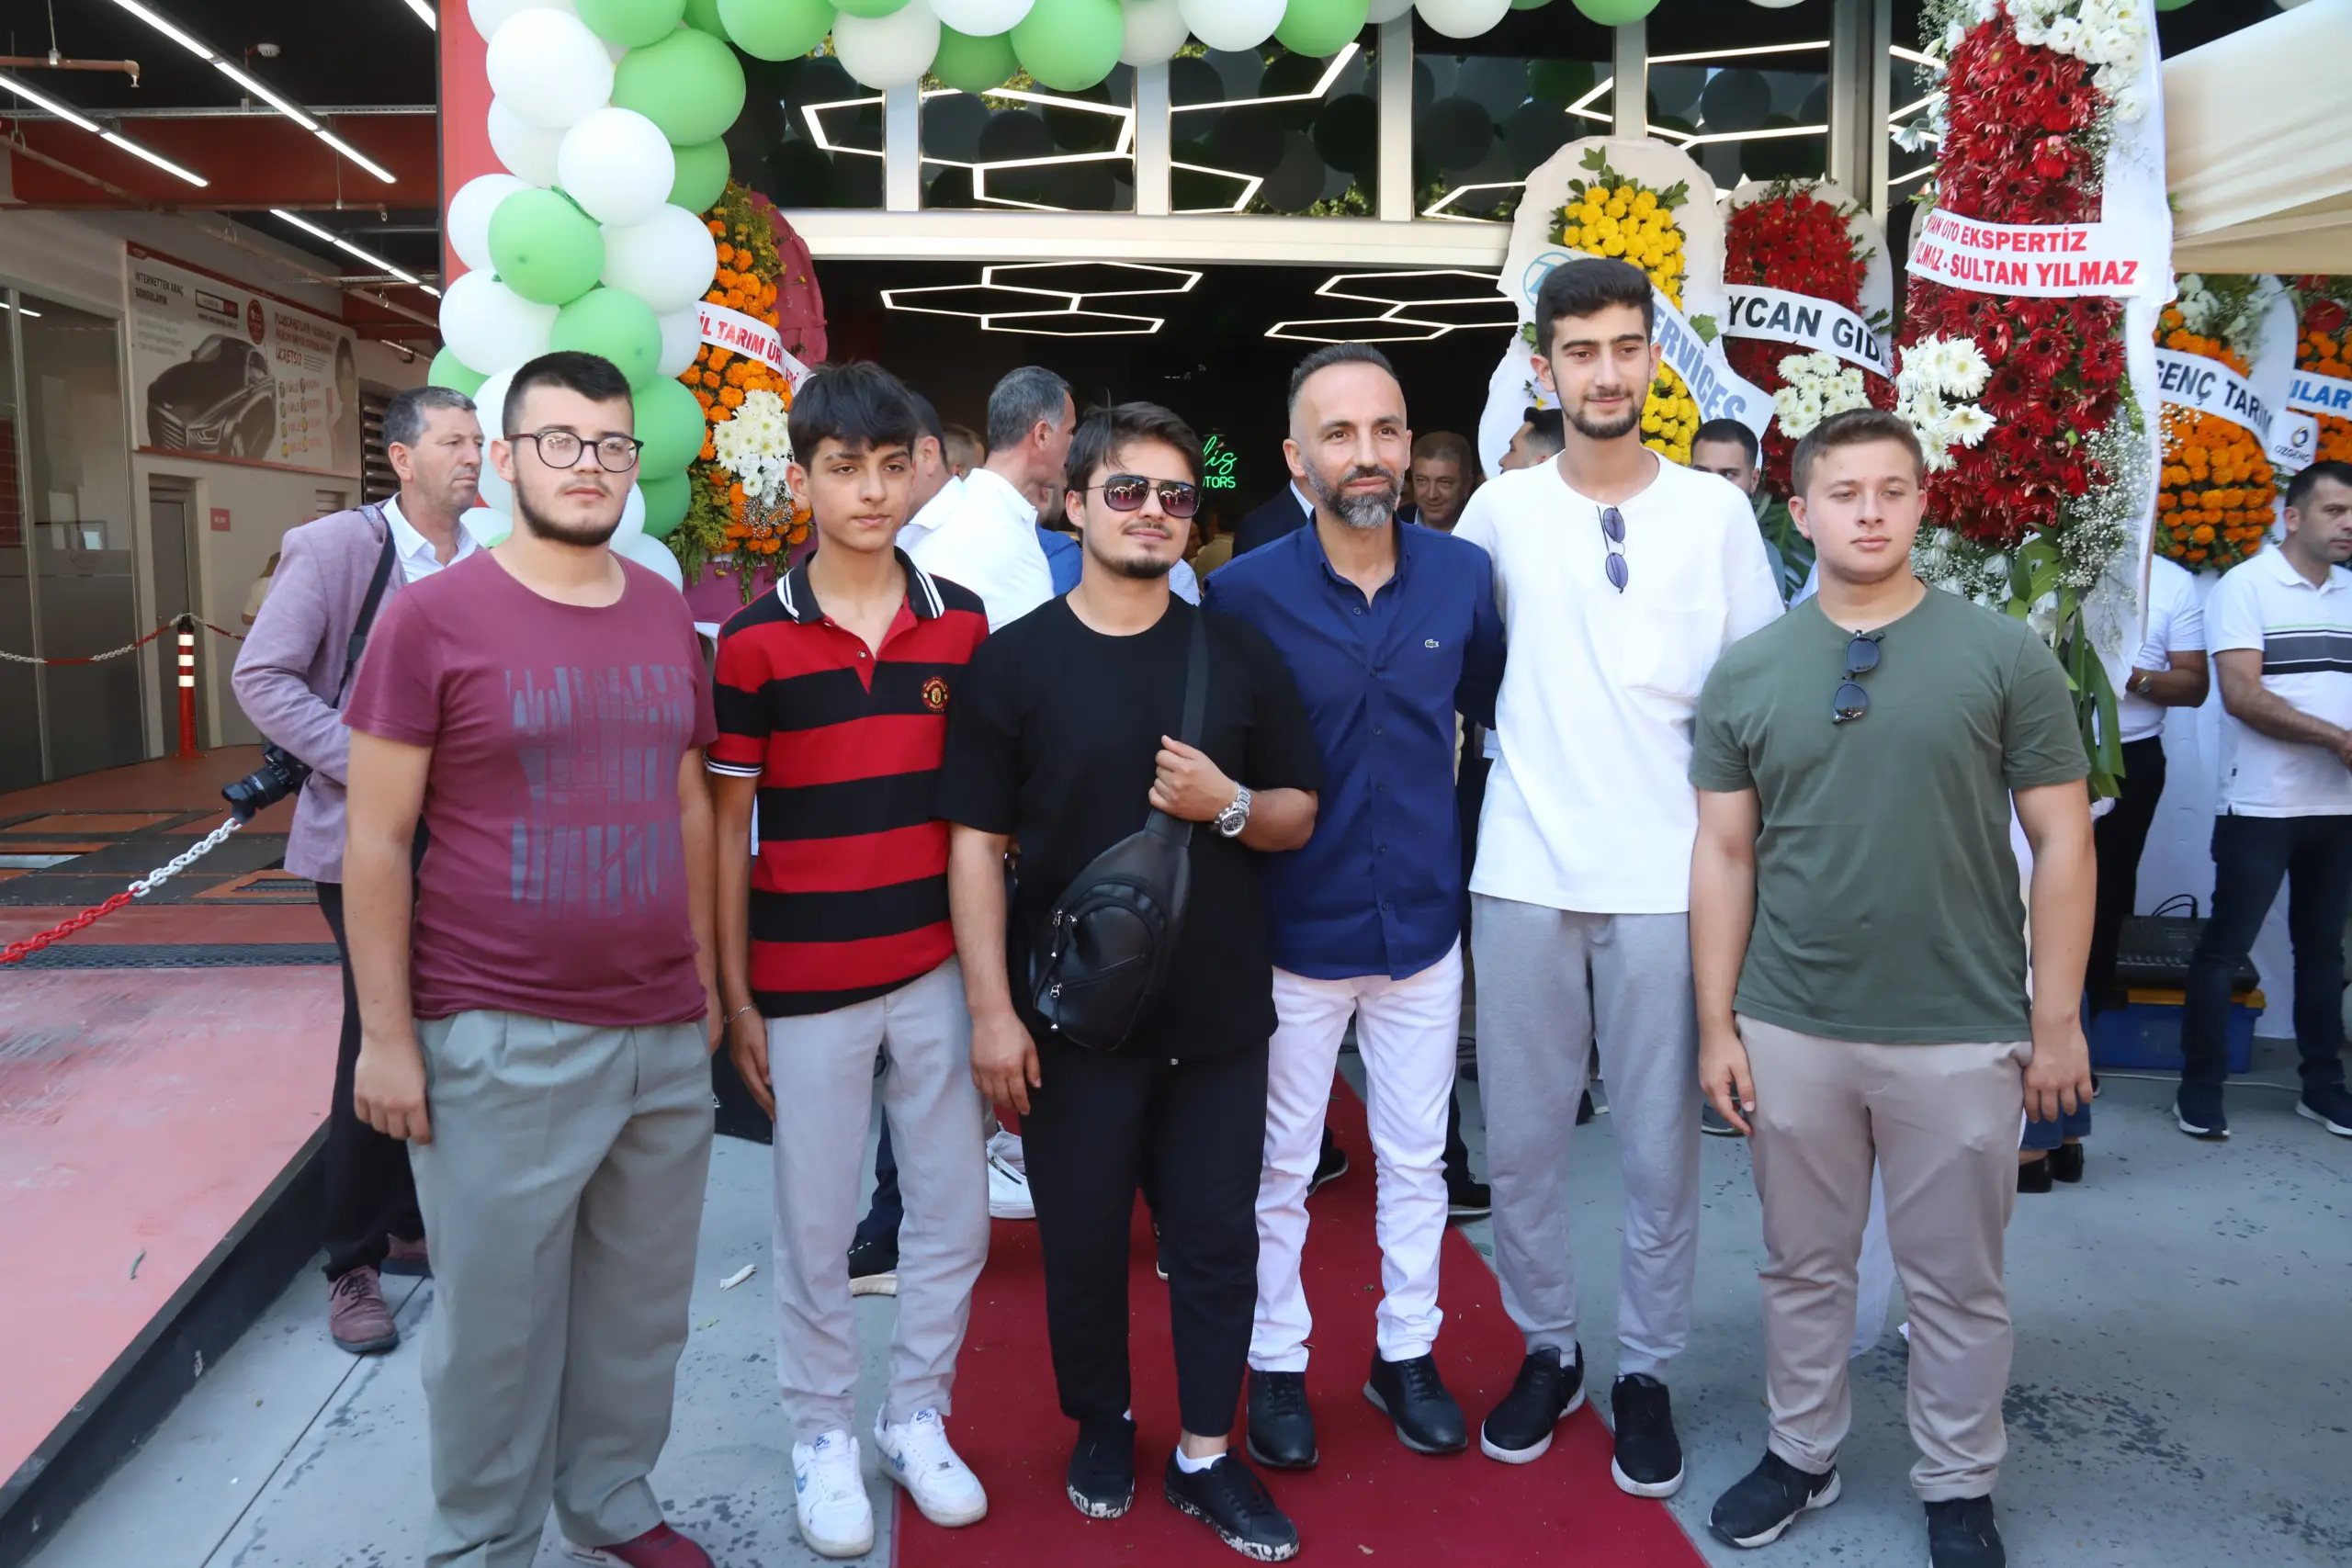 ELİS MOTOR Serdivan Arabacıalanı Mahallesi'nde tören ile açıldı